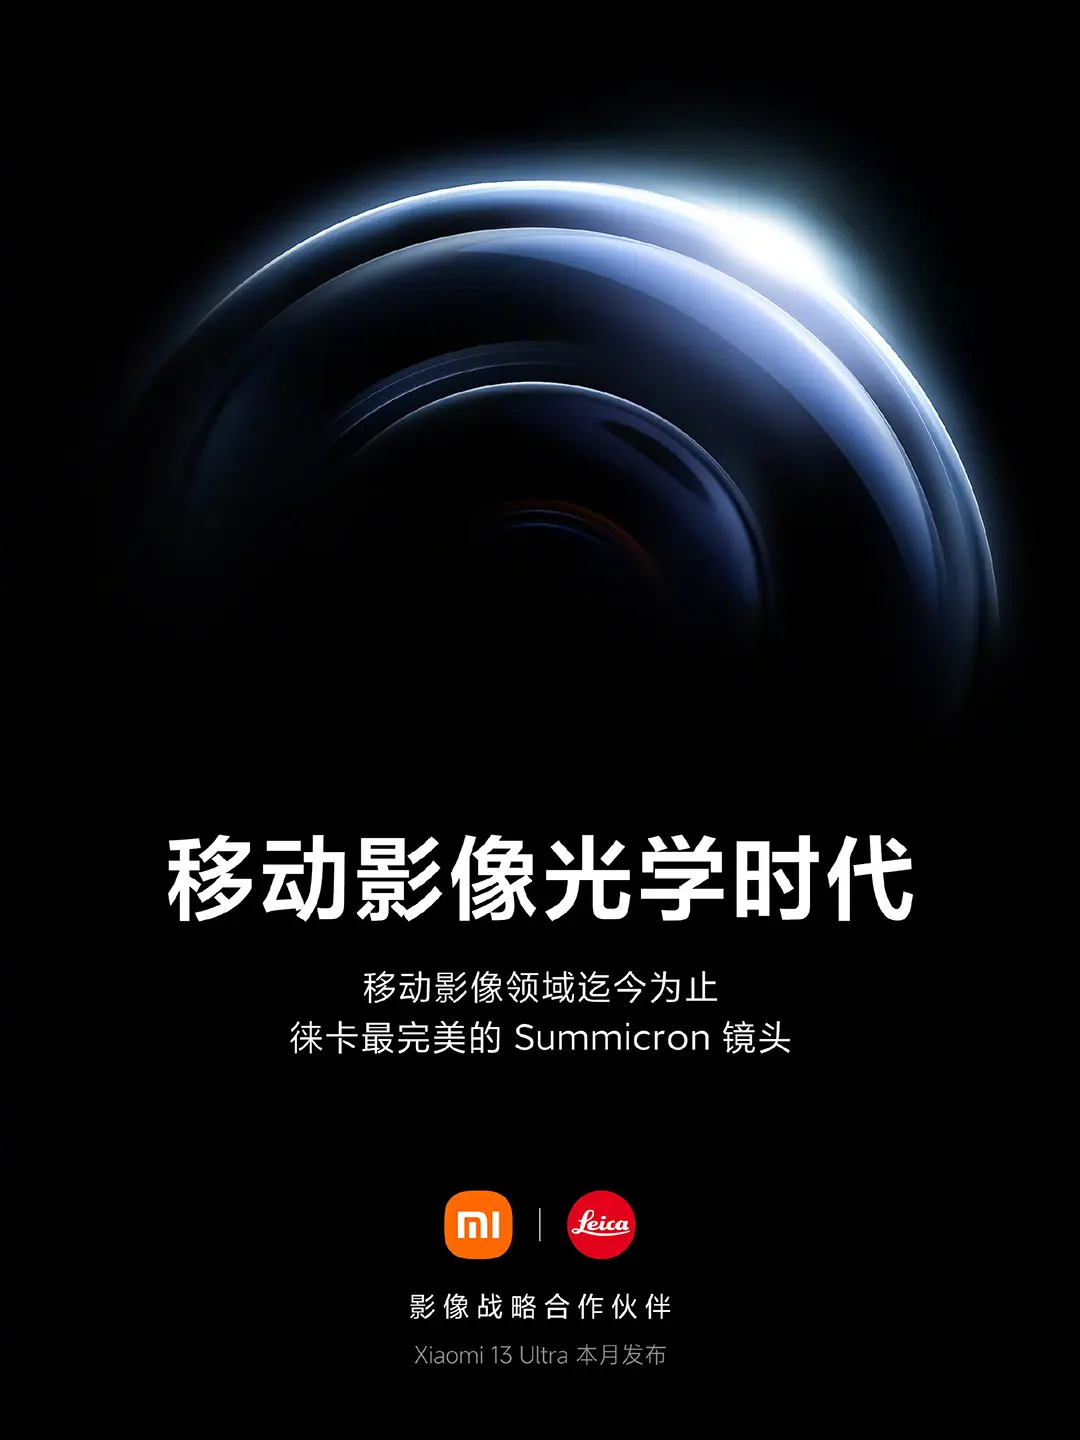 Hivatalos! Áprilisban jön globálisan a Xiaomi 13 Ultra